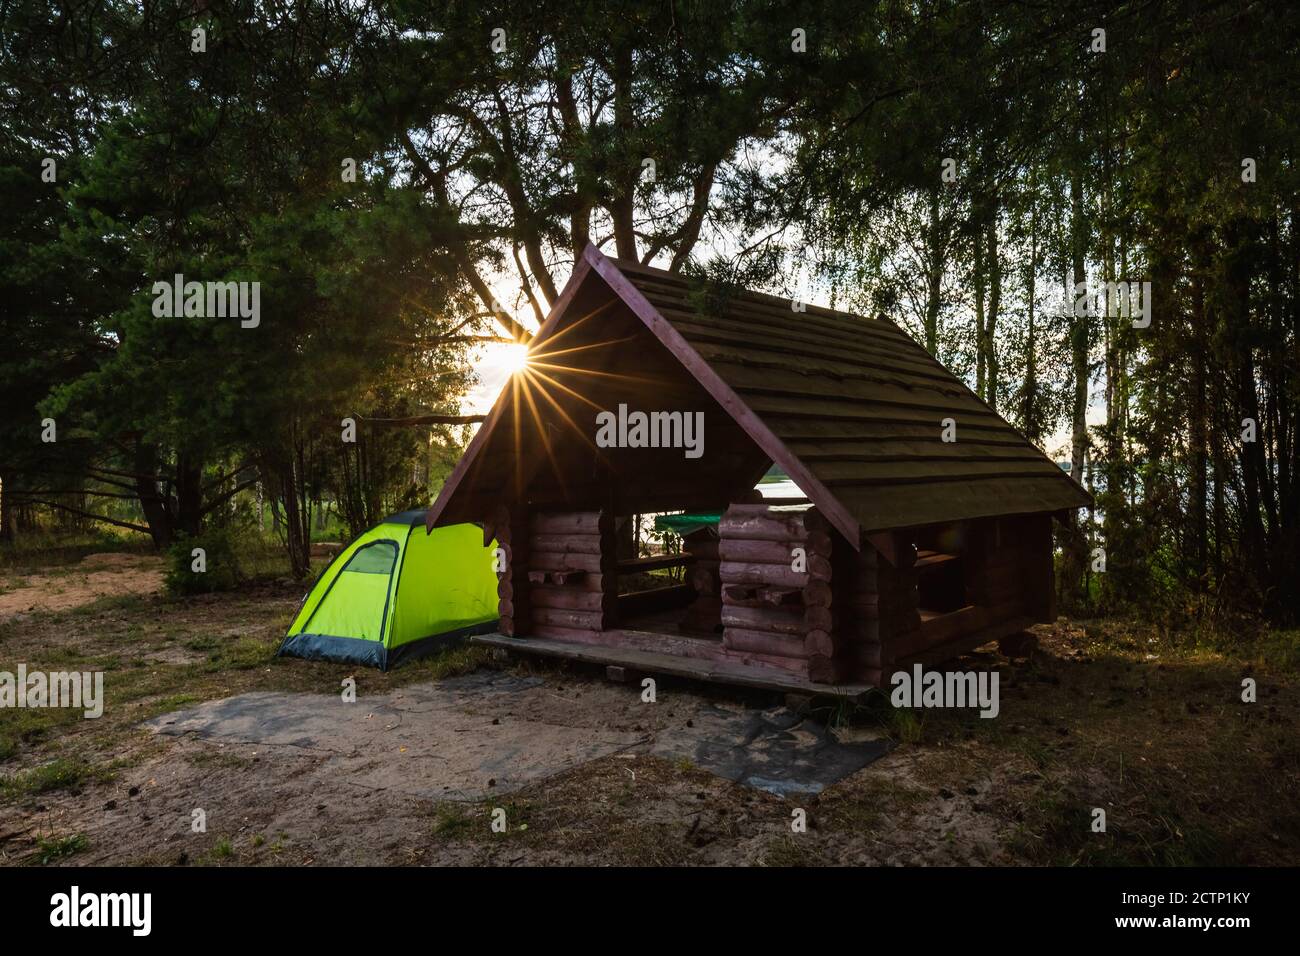 Tenda accanto alla cabina di legno presso i laghi Braslaw, Bielorussia. Foto Stock